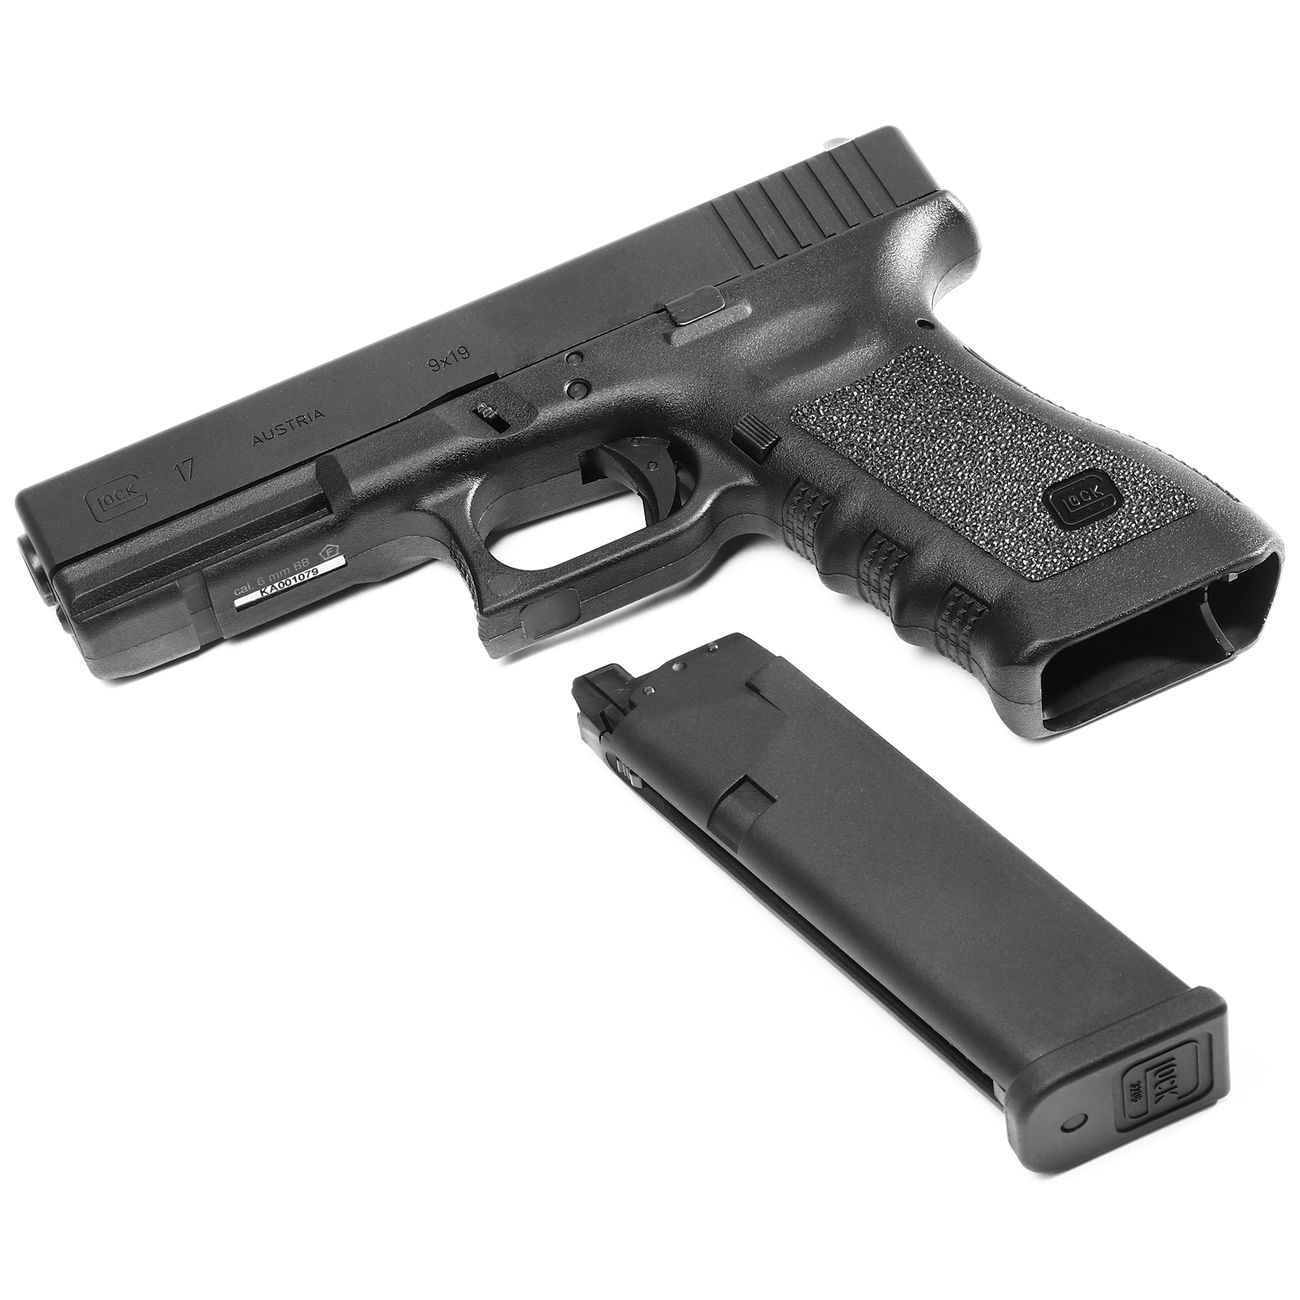 VFC Glock 17 Gen. 3 mit Metallschlitten GBB 6mm BB schwarz kaufen - Kotte & Zeller